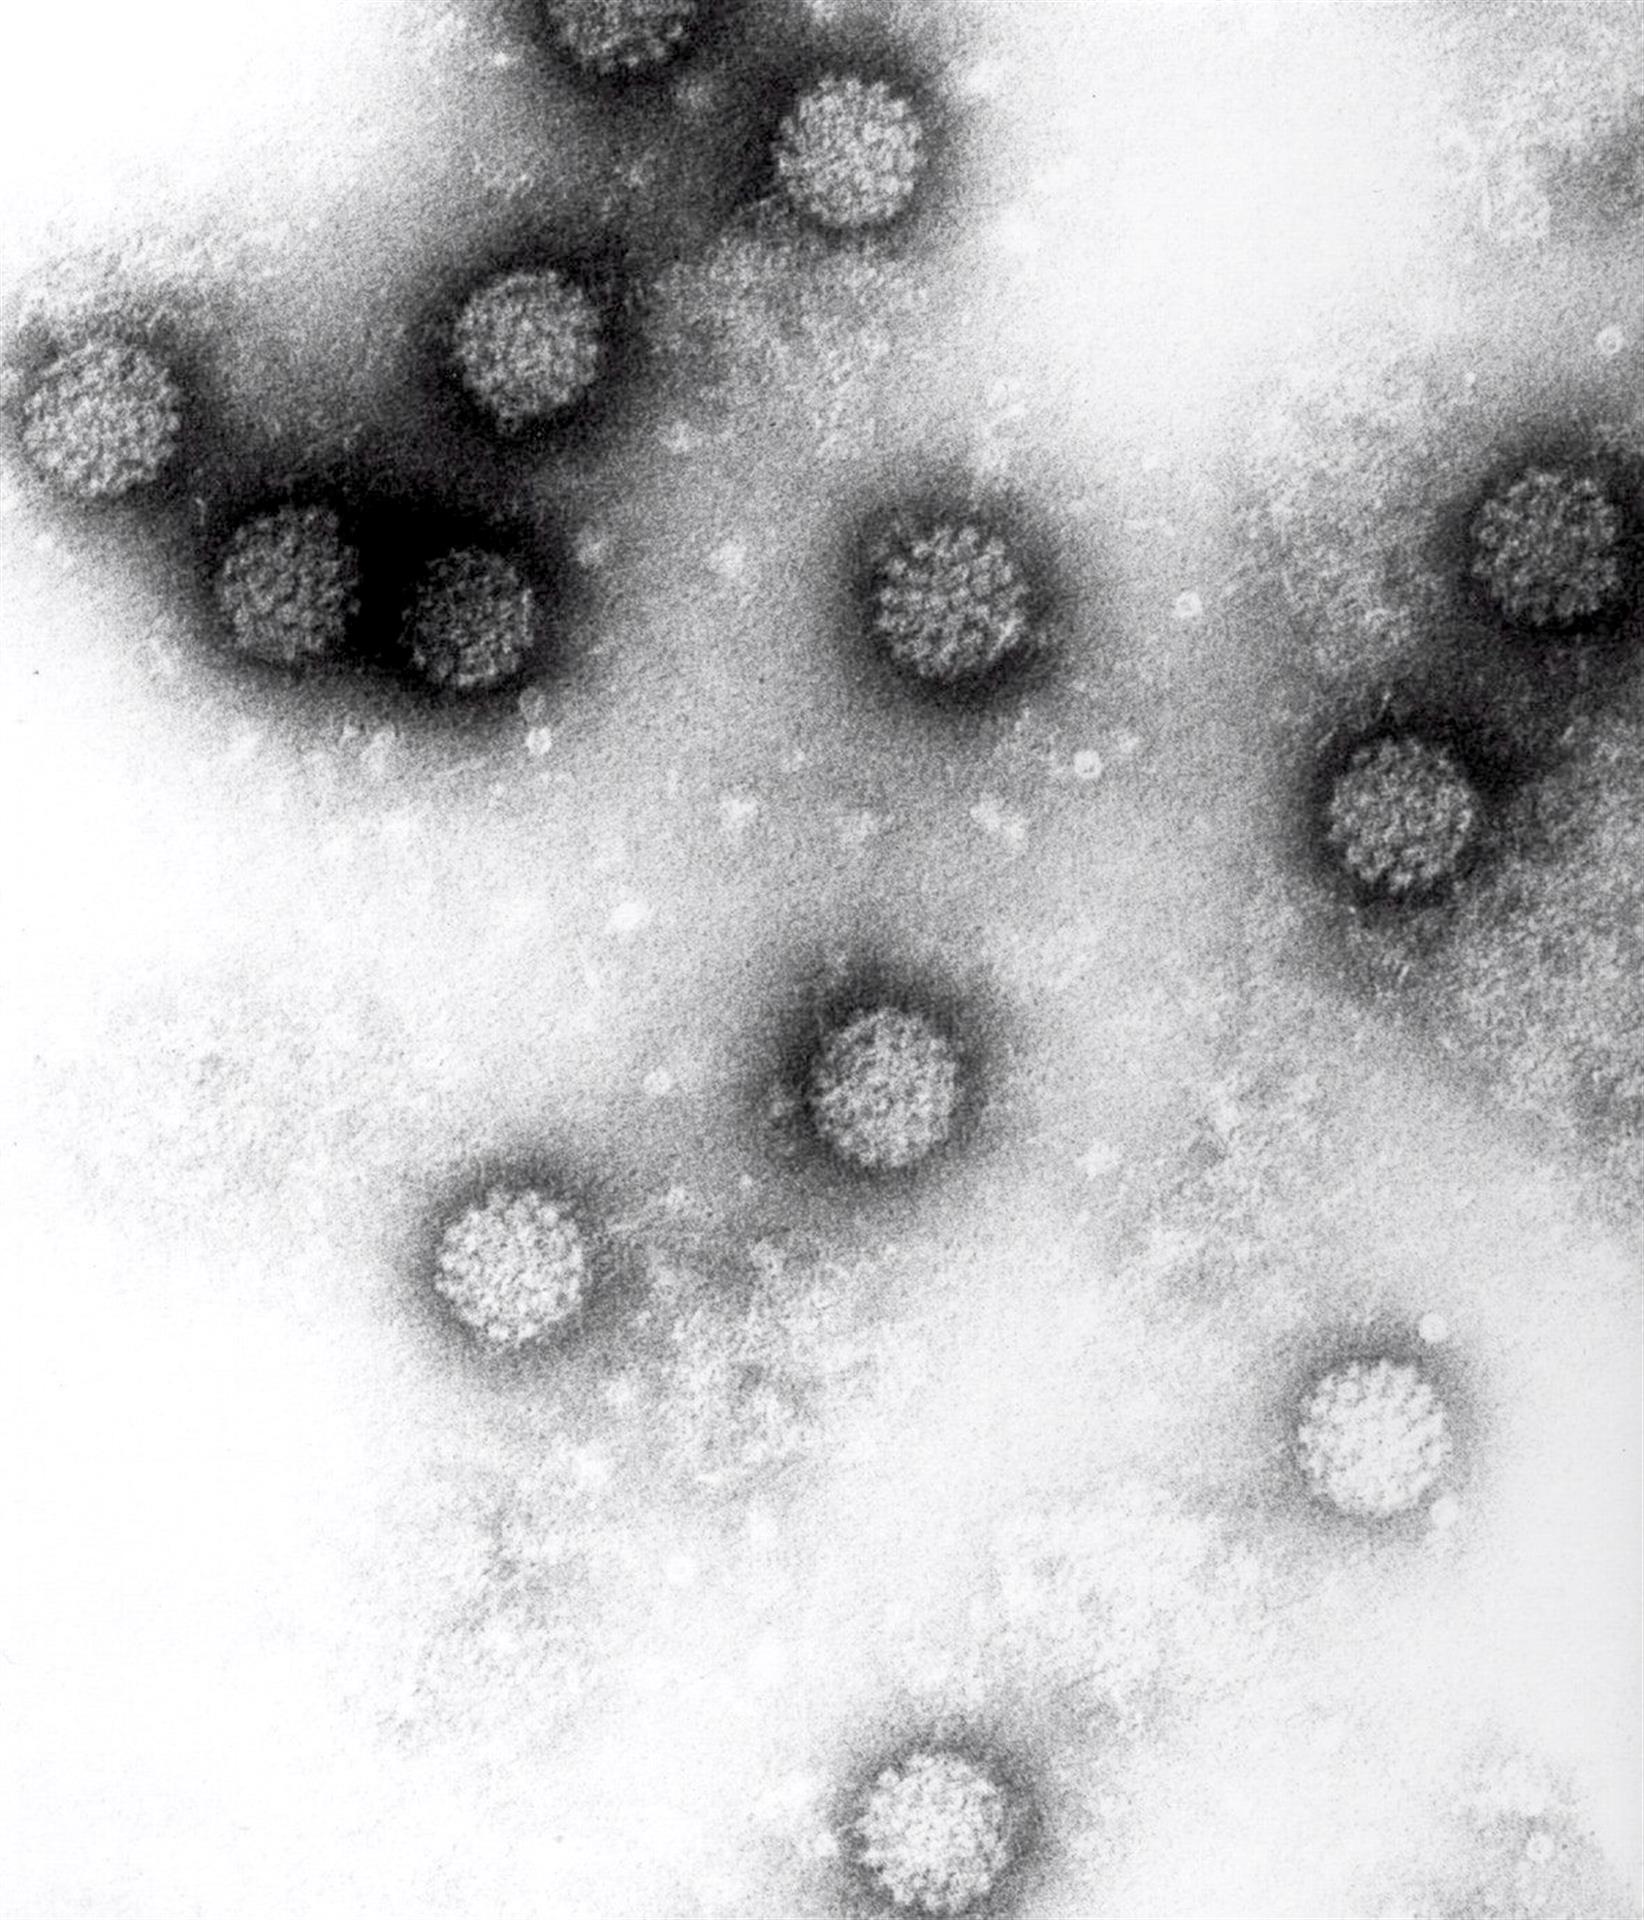 Imagen a través del microscopio del virus del papiloma humano. EFE/Instituto Alemán de Investigaciones sobre el Cáncer (DKFZ)/Handout